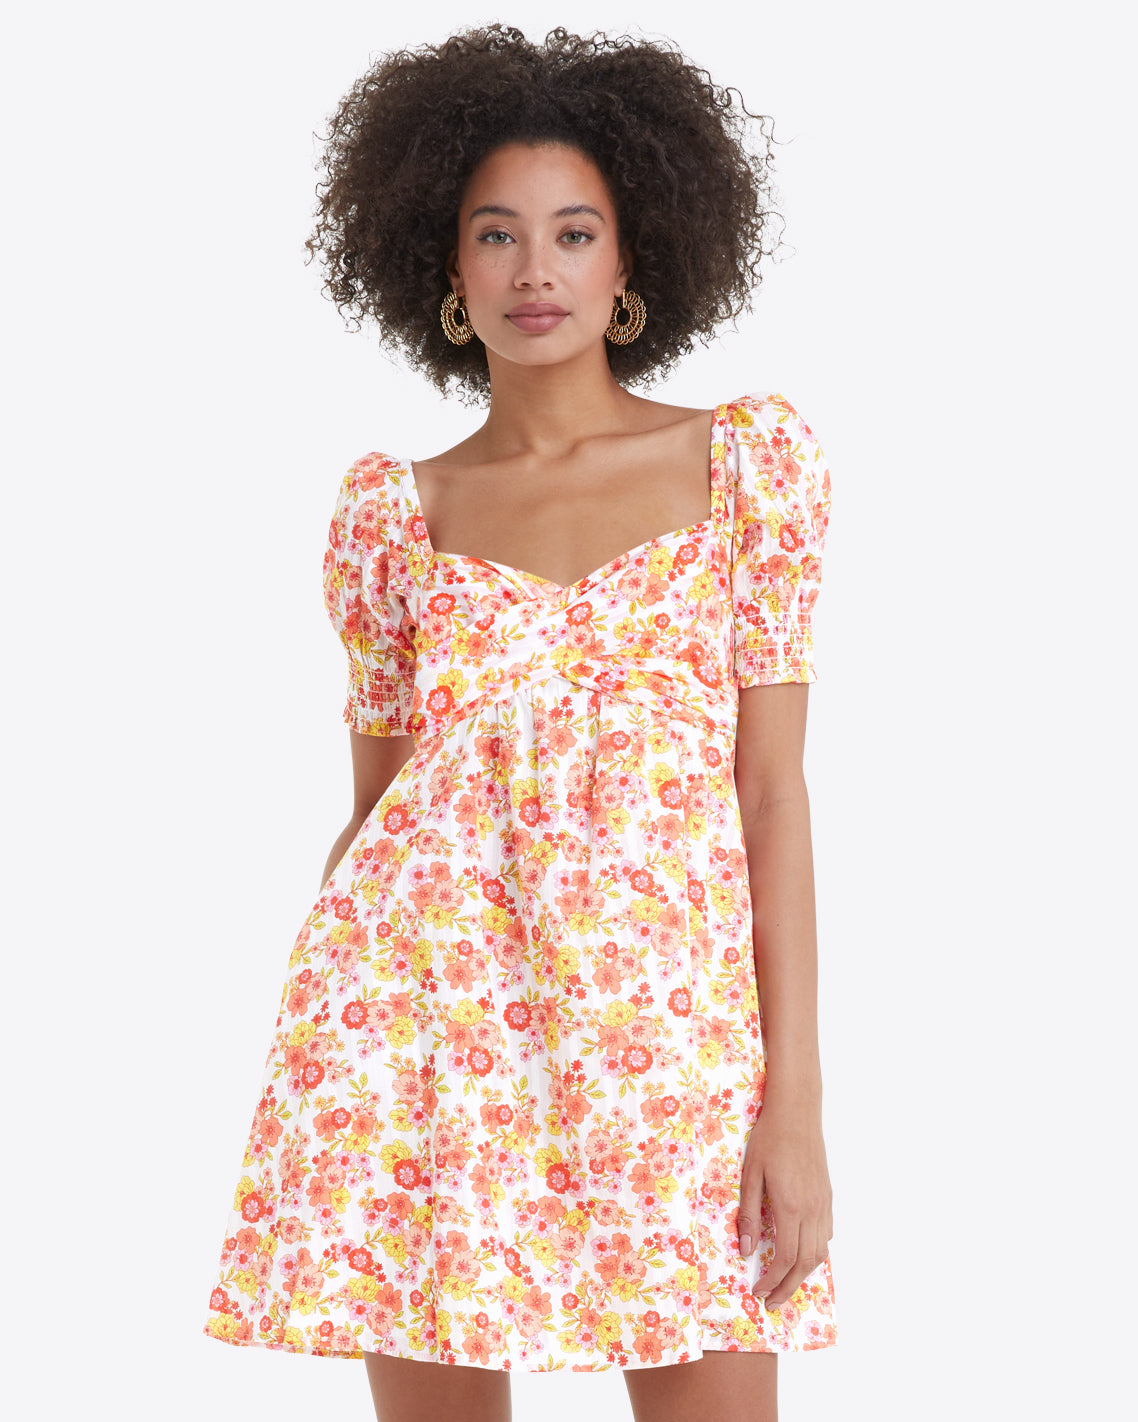 Tye Mini Dress in Field Blossom